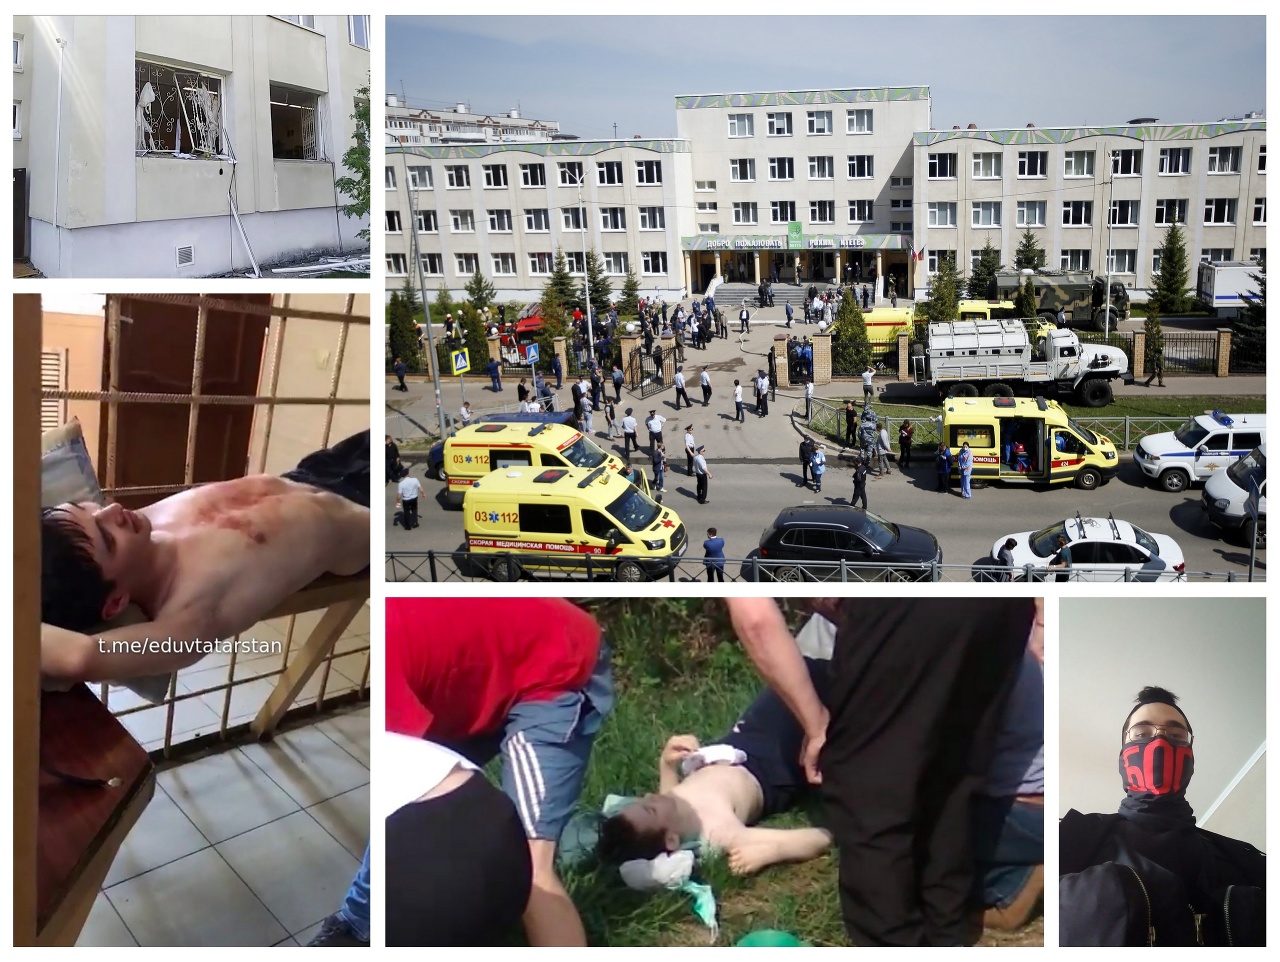 Strieľalo sa v tejto škole v meste Kazaň.